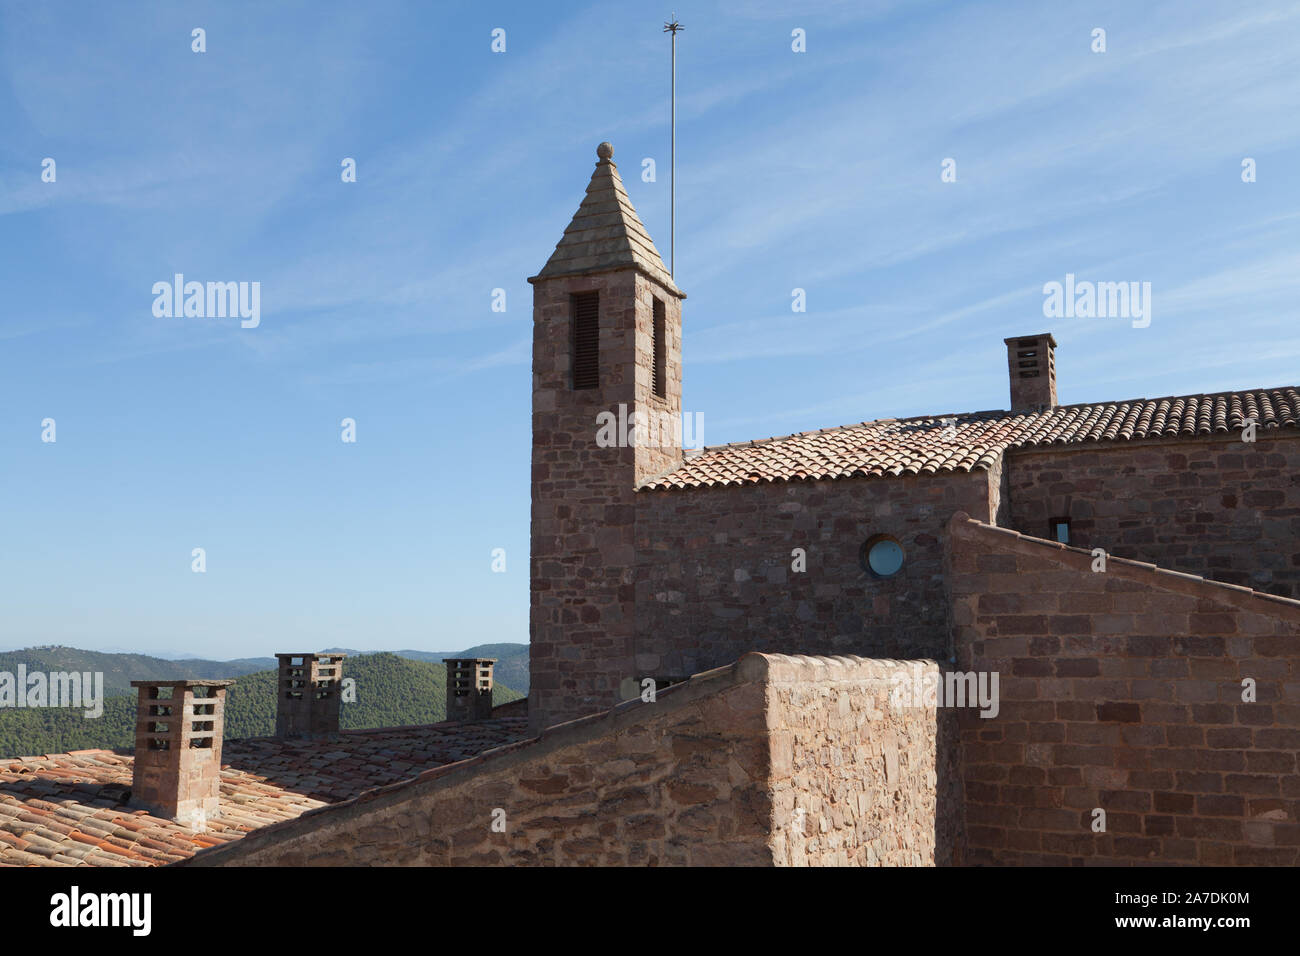 Castillo de Cardona in town Cardona, Catalonia, Spain. Stock Photo